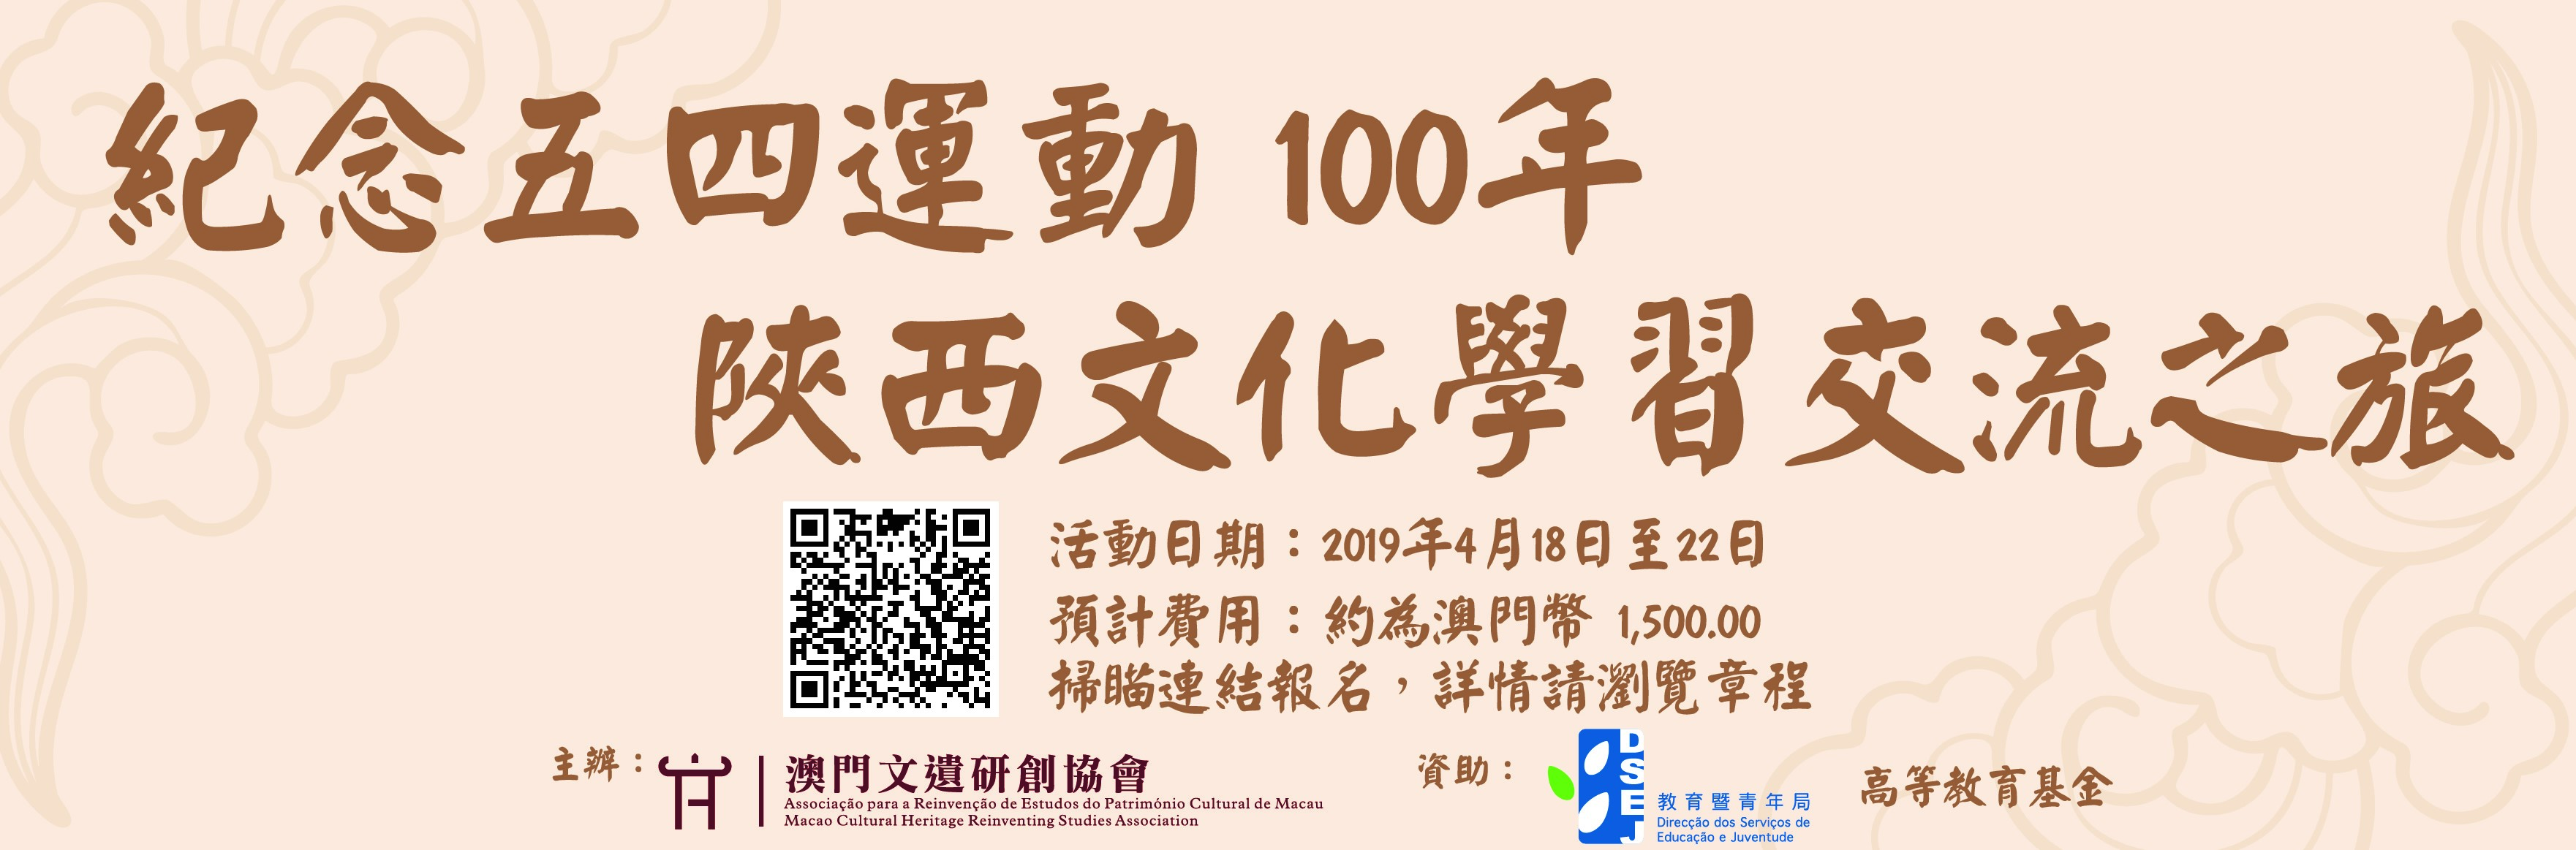 紀念五四運動100年—－陝西文化學習交流之旅.jpg